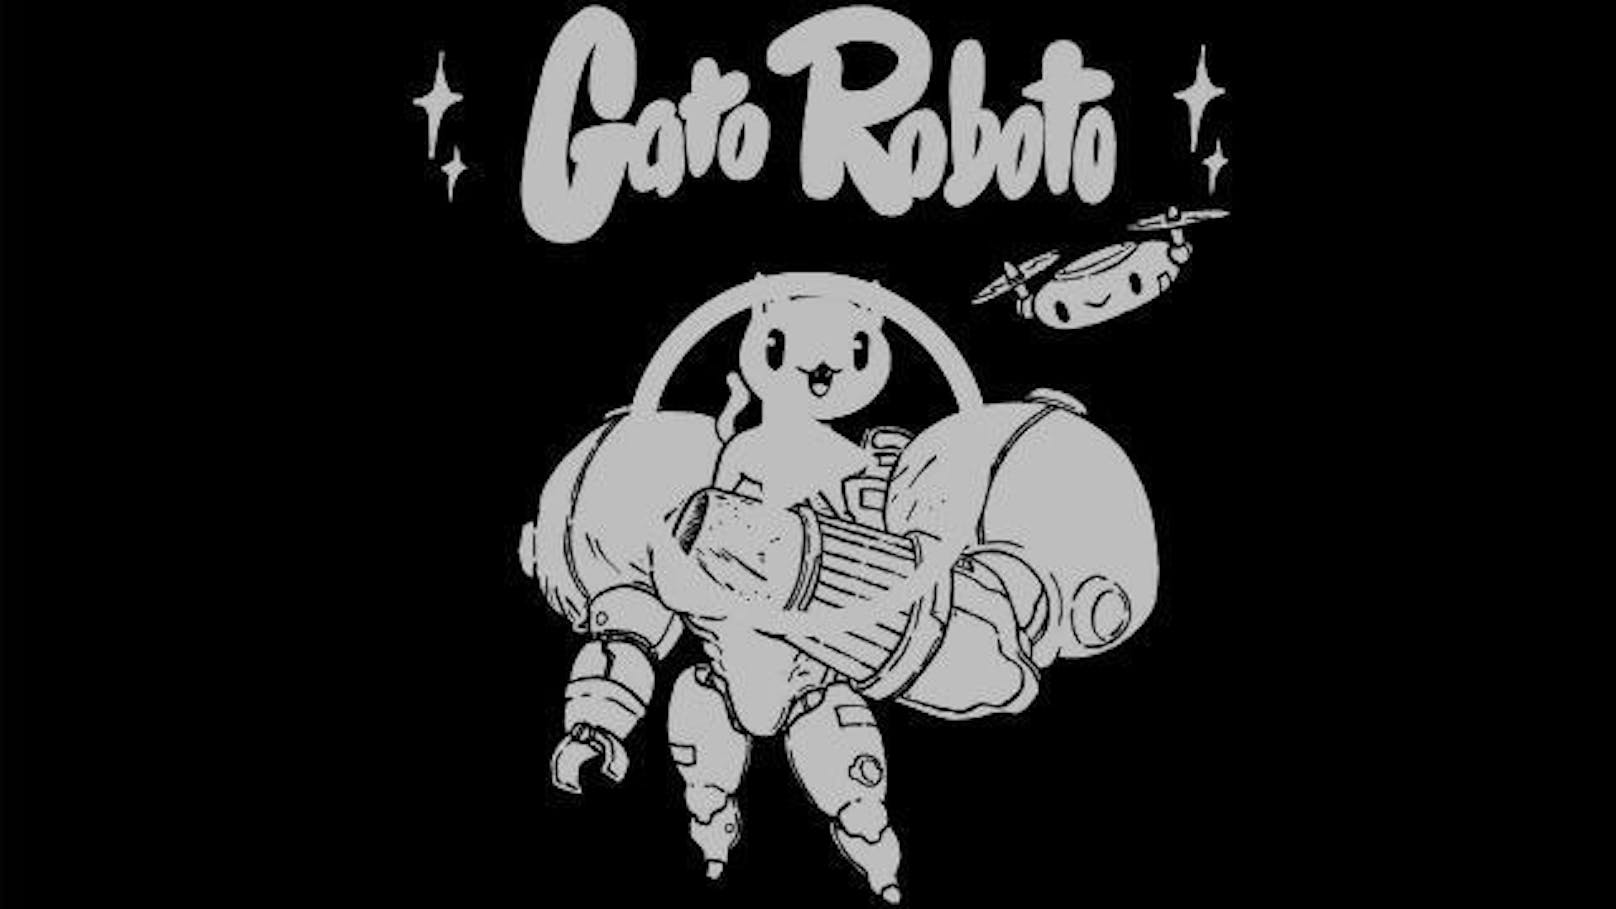 Devolver Digital stellt Gato Roboto, ein CatMechtroidvania.-Spiel von doinksoft vor. Das Spiel wird im kommenden Jahr für den PC und die Nintendo Switch erscheinen. Das Spiel wird mit einem witzigen Katzenclip angekündigt. <a href="https://www.youtube.com/watch?v=akZHaKCO7_8">Hier sieht man den Clip.</a>